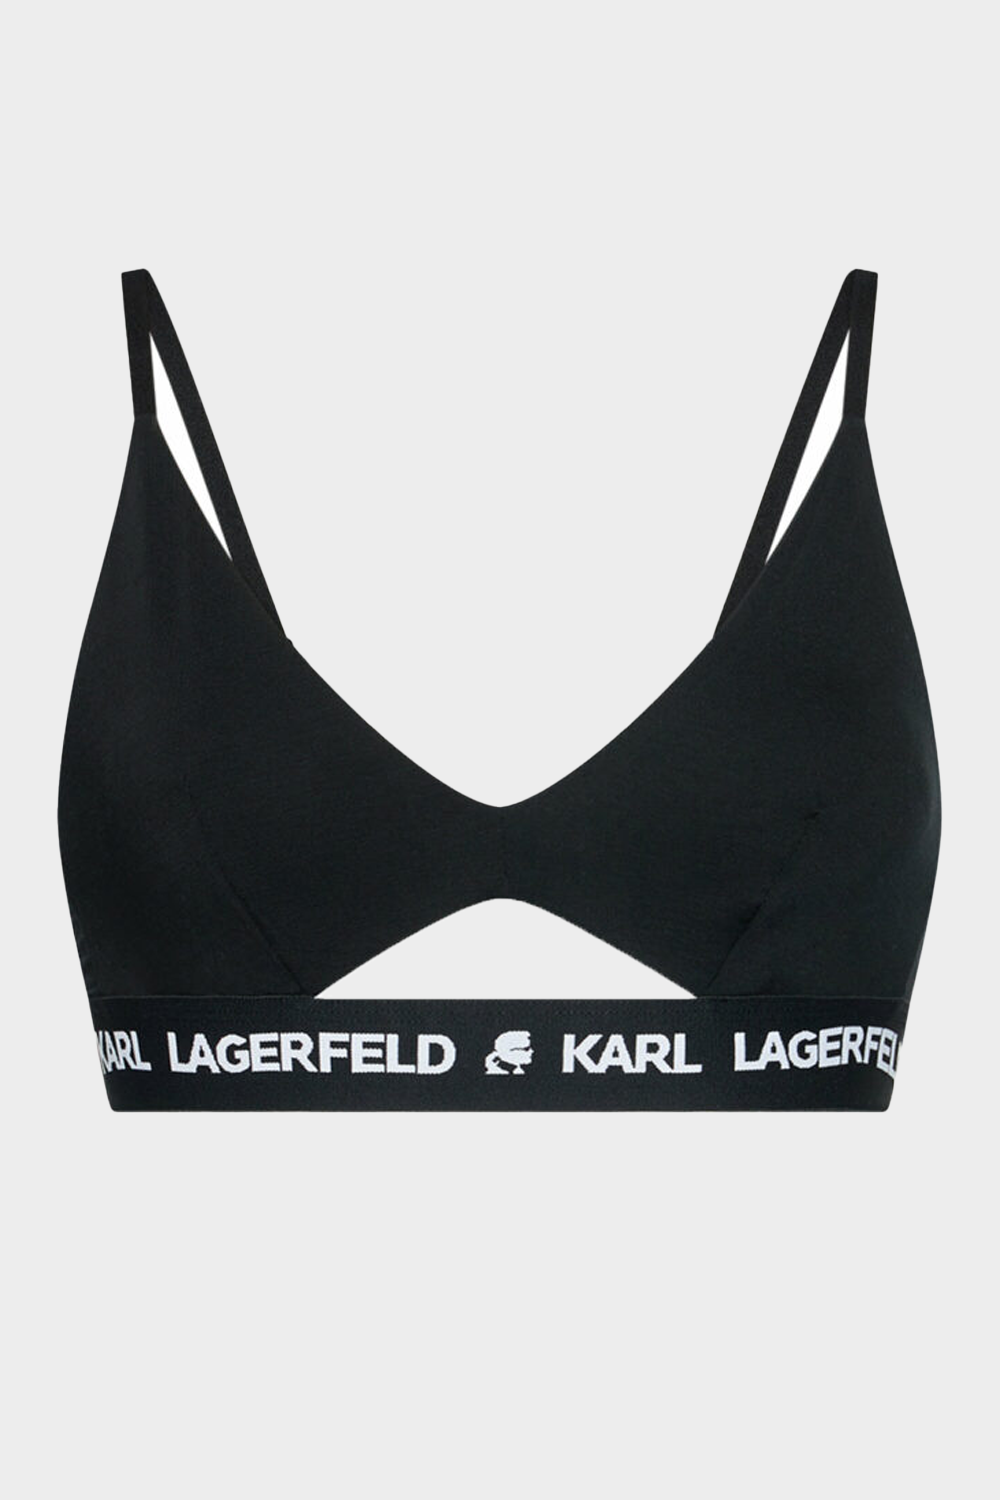 גוזיות לנשים  בצבע שחור KARL LAGERFELD